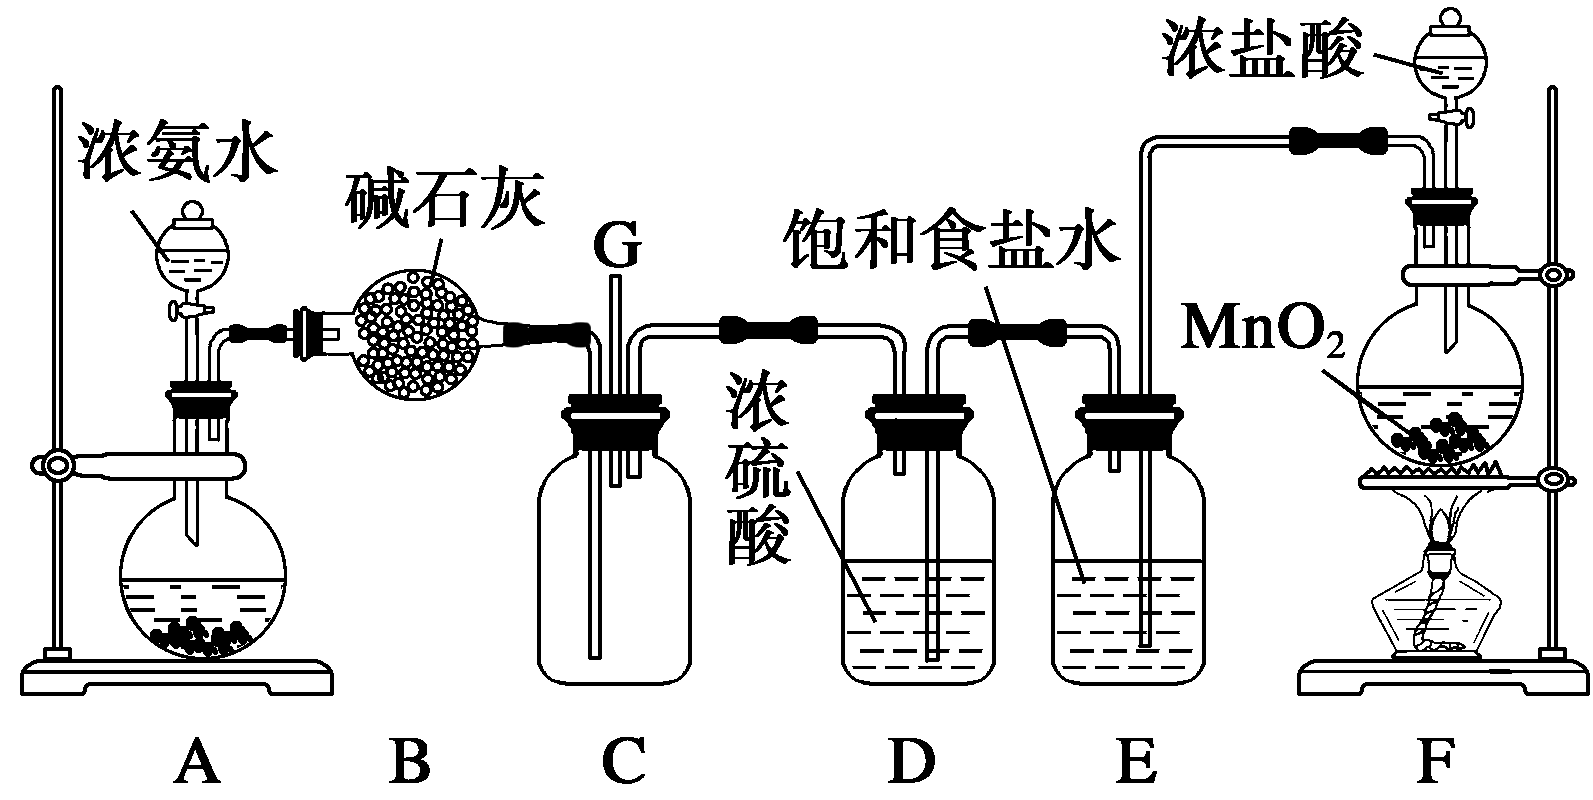 以下装置探究氯气与氨气之间的反应,a,f分别为氨气和氯气的发生装置,c